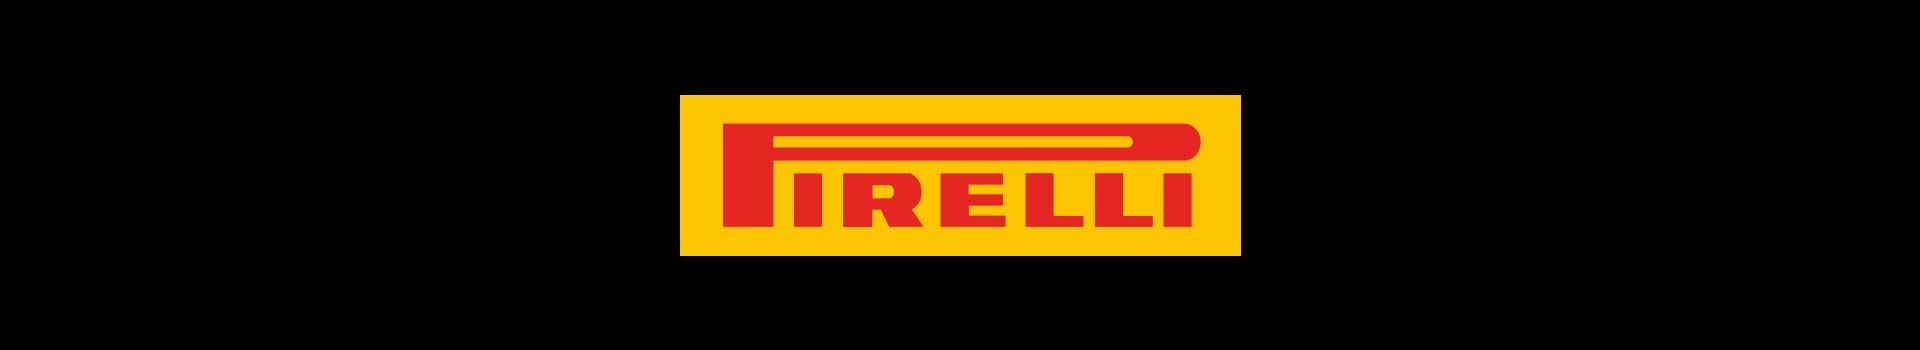 pirelli-banner